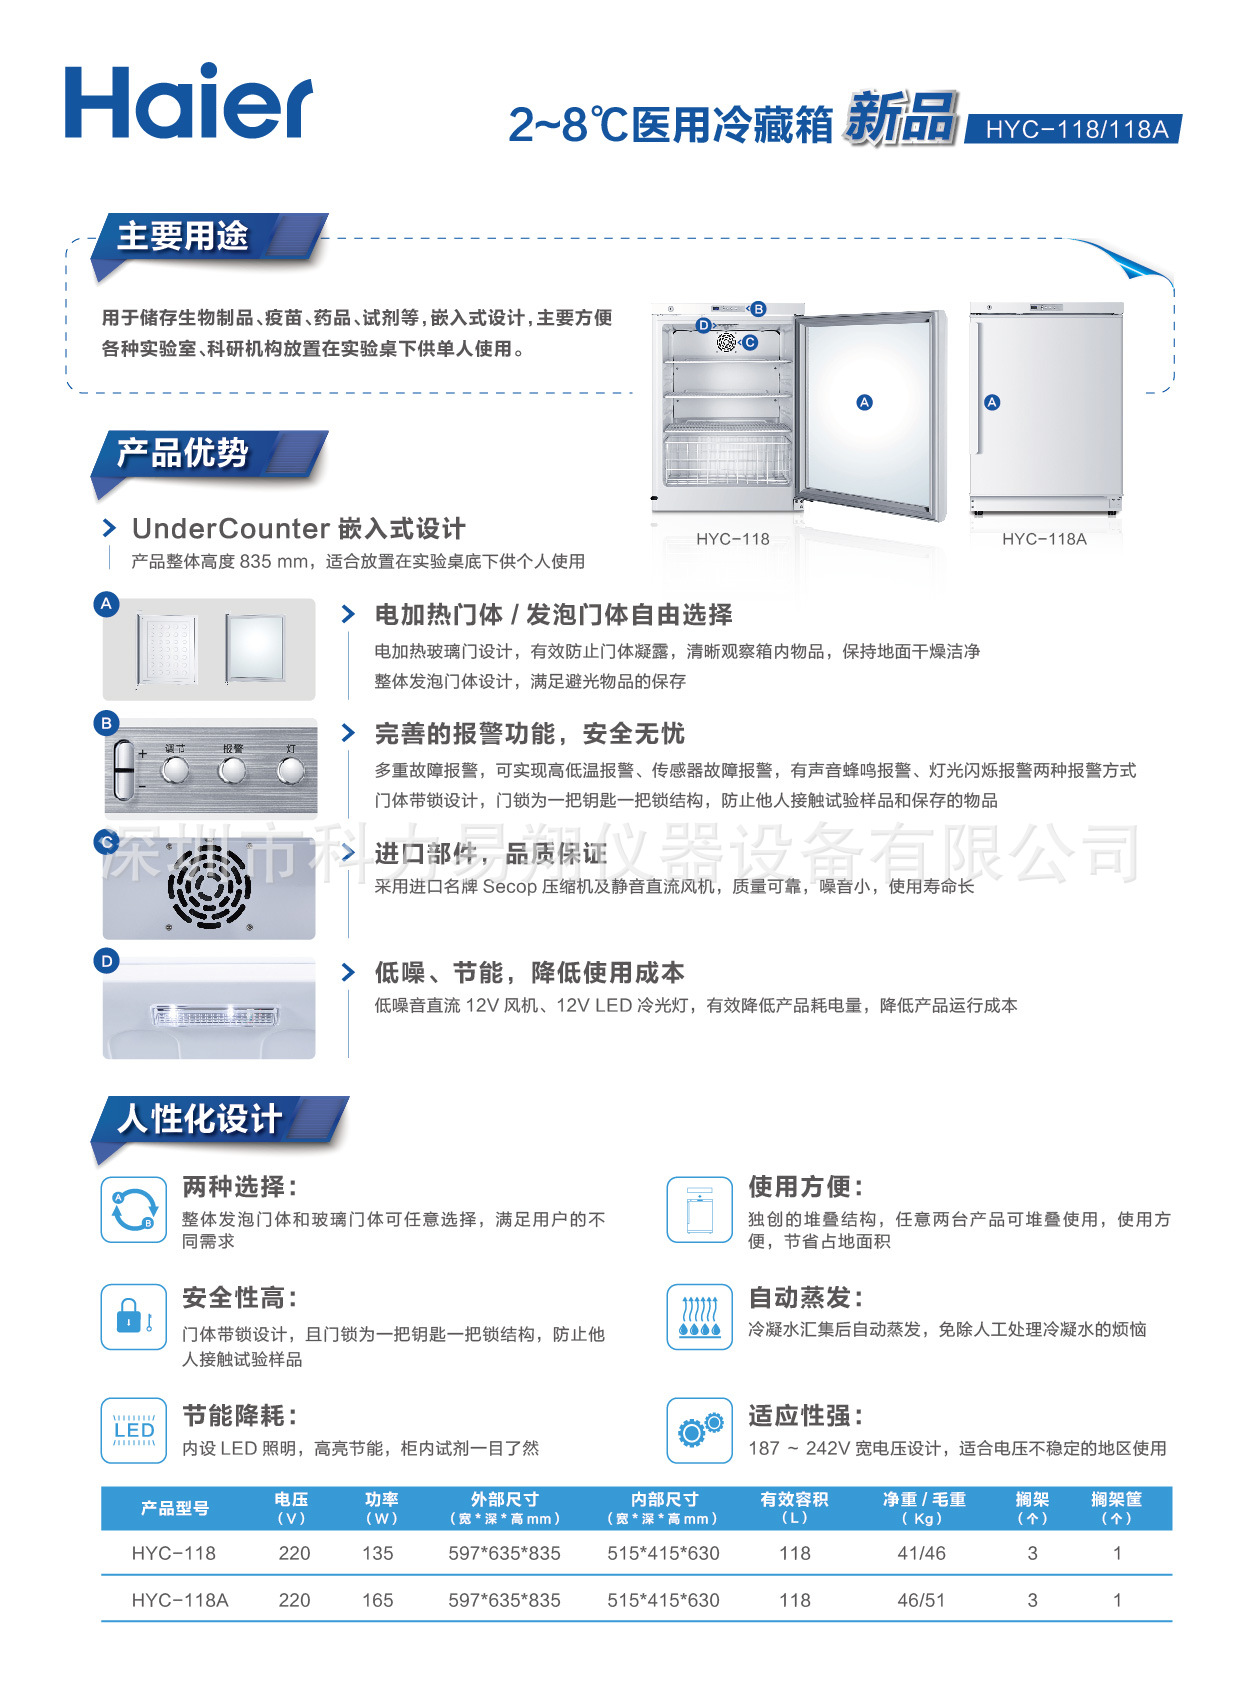 青岛海尔嵌入式医用冷藏箱HYC-118A  温度2-8度  广东区域代理示例图1